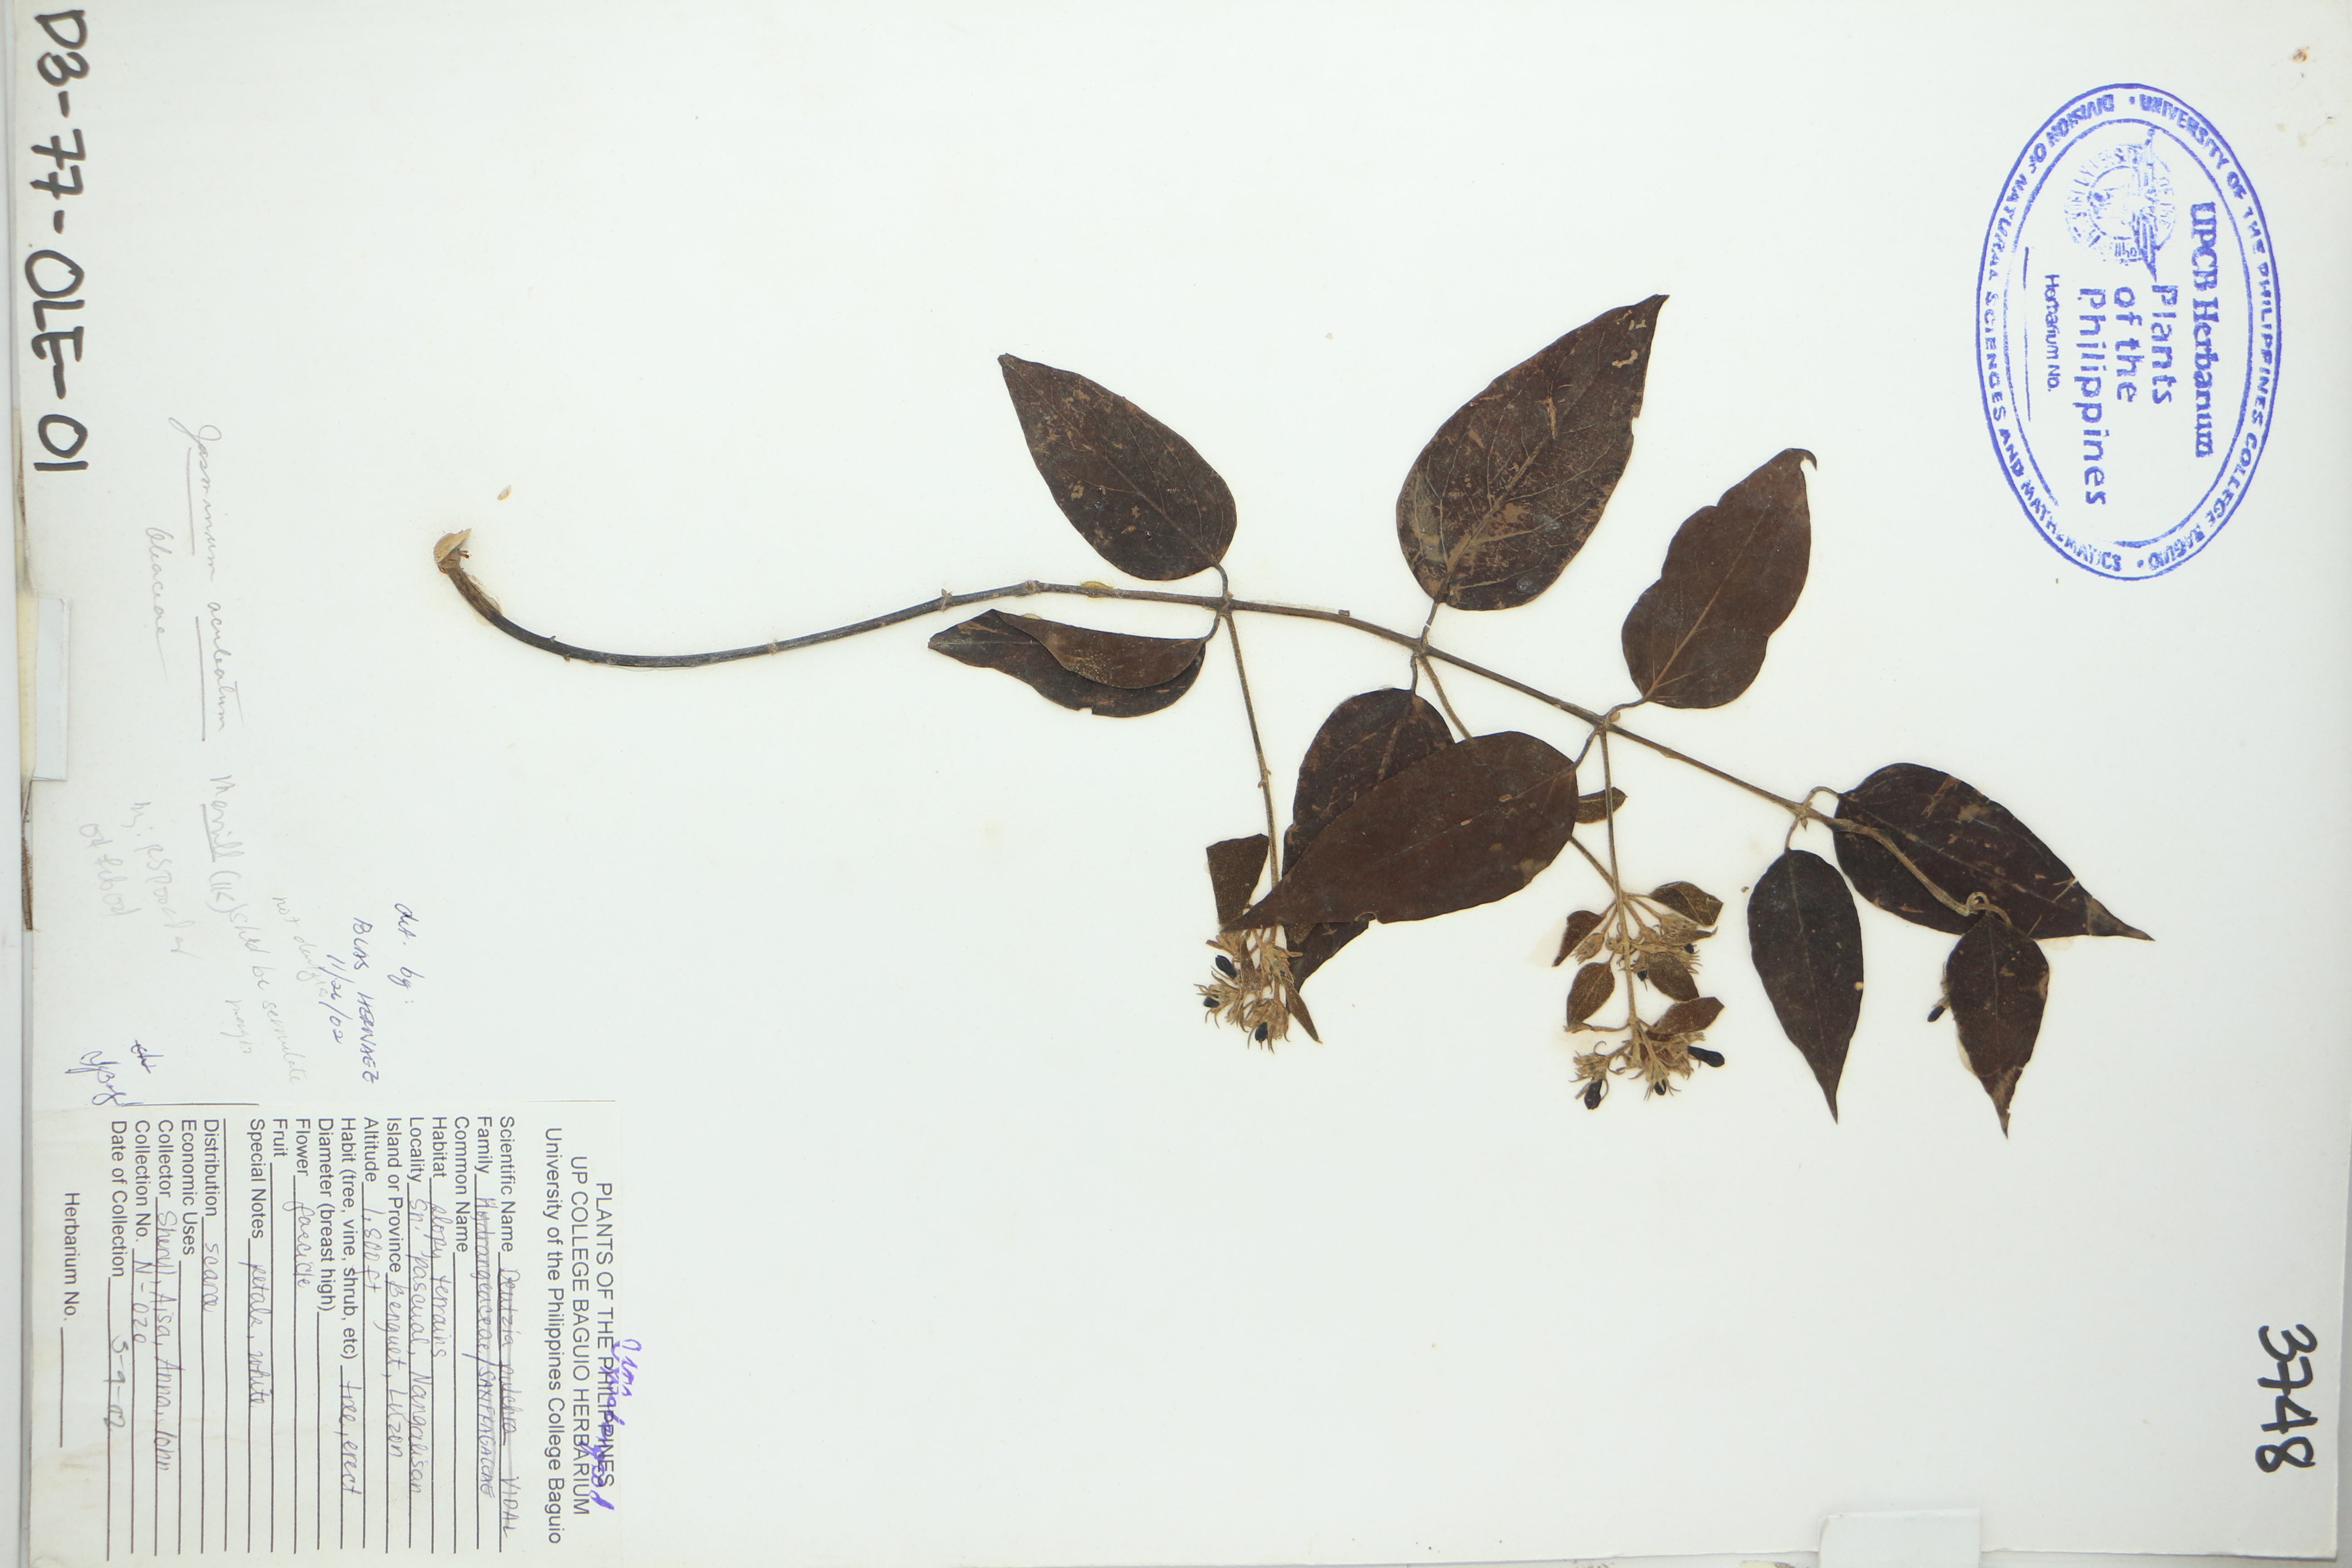 Jasminum simplicifolium subsp. australiense